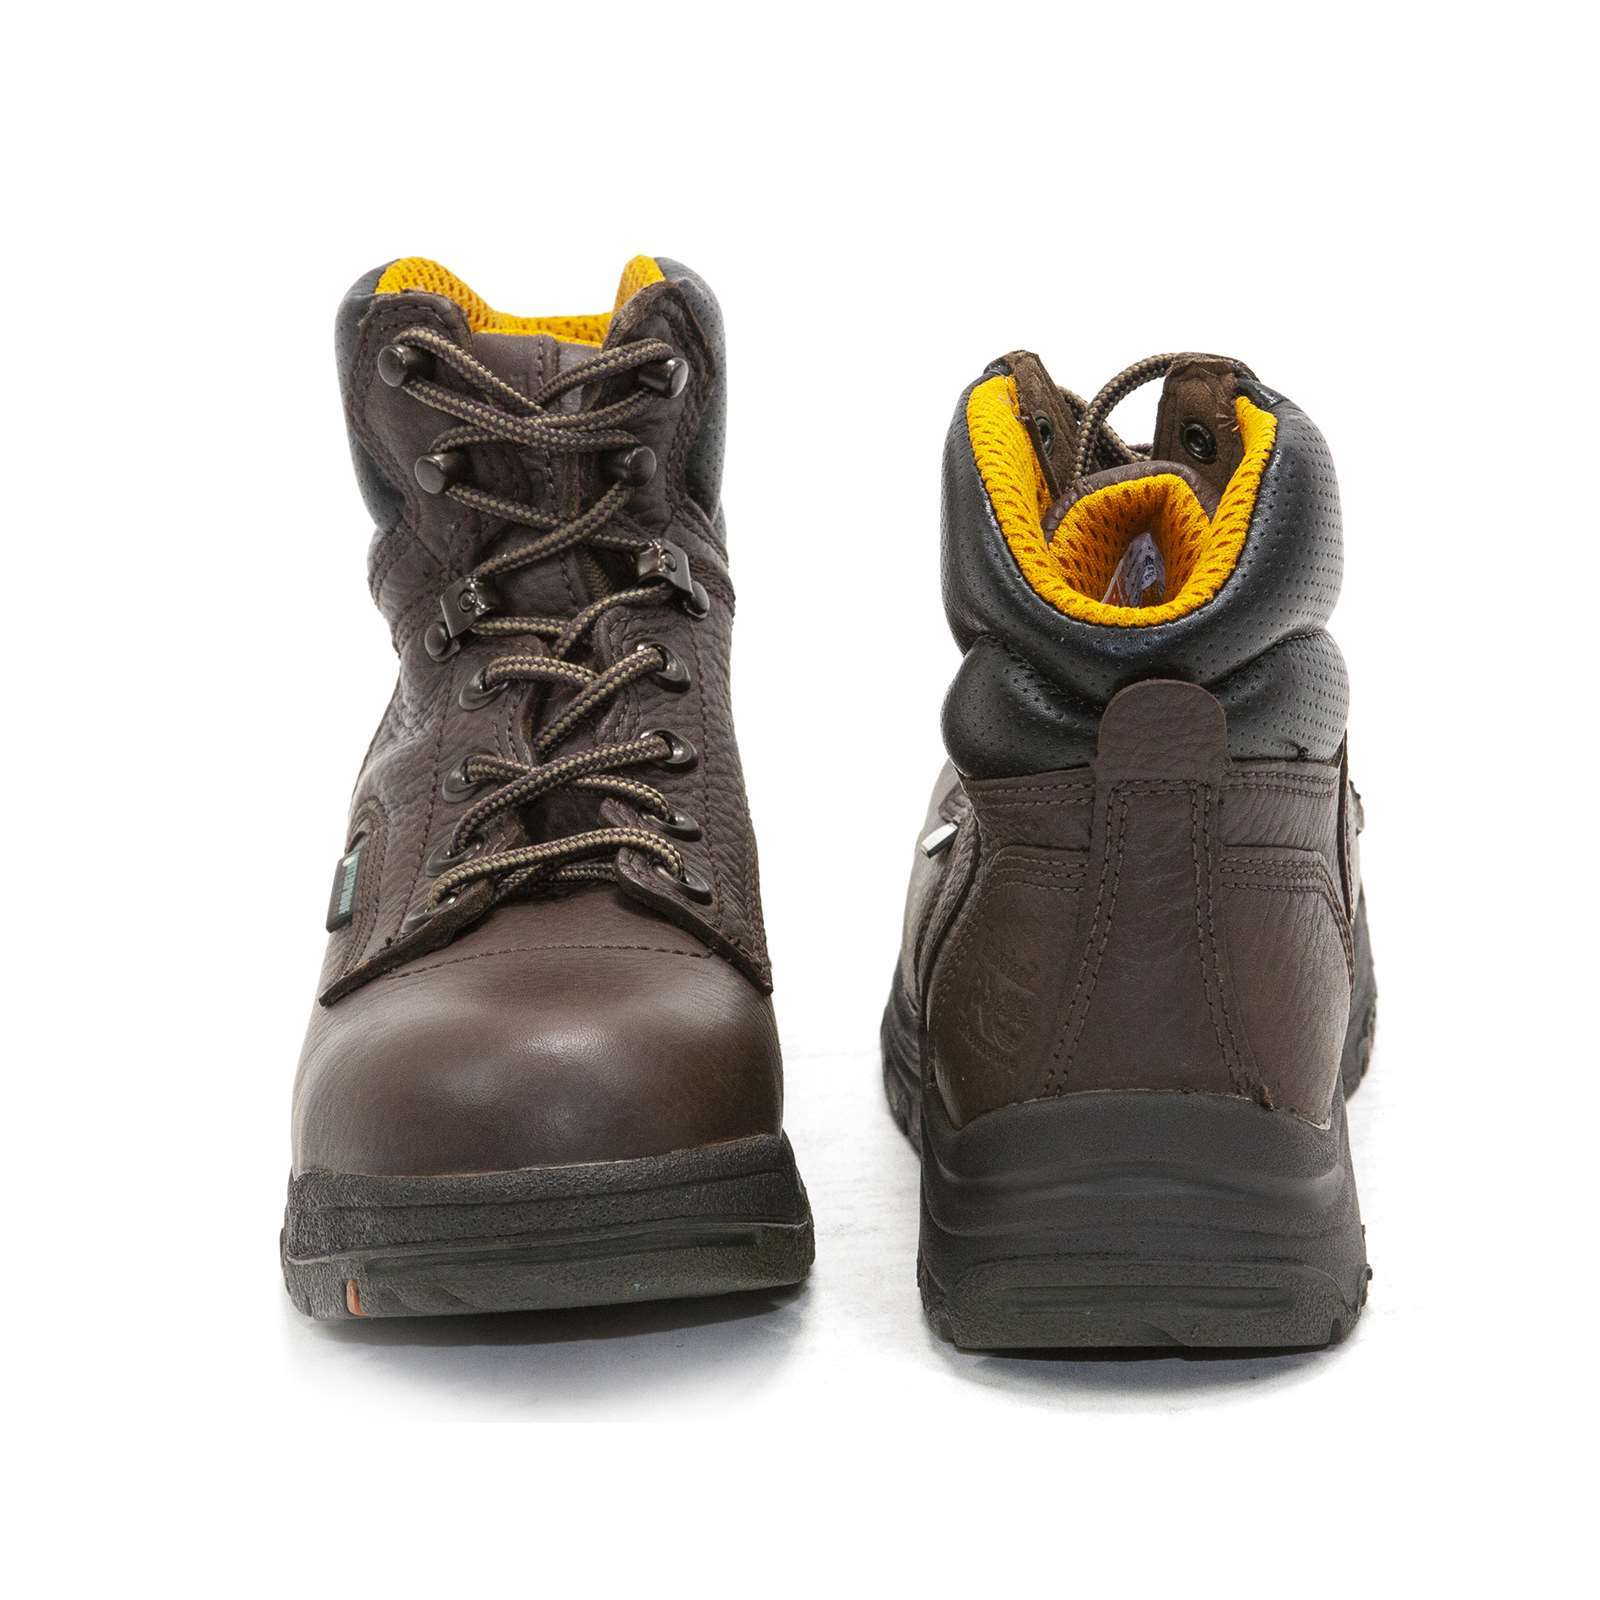 Timberland Pro Women Titan 6" Waterproof Safety Toe Boots